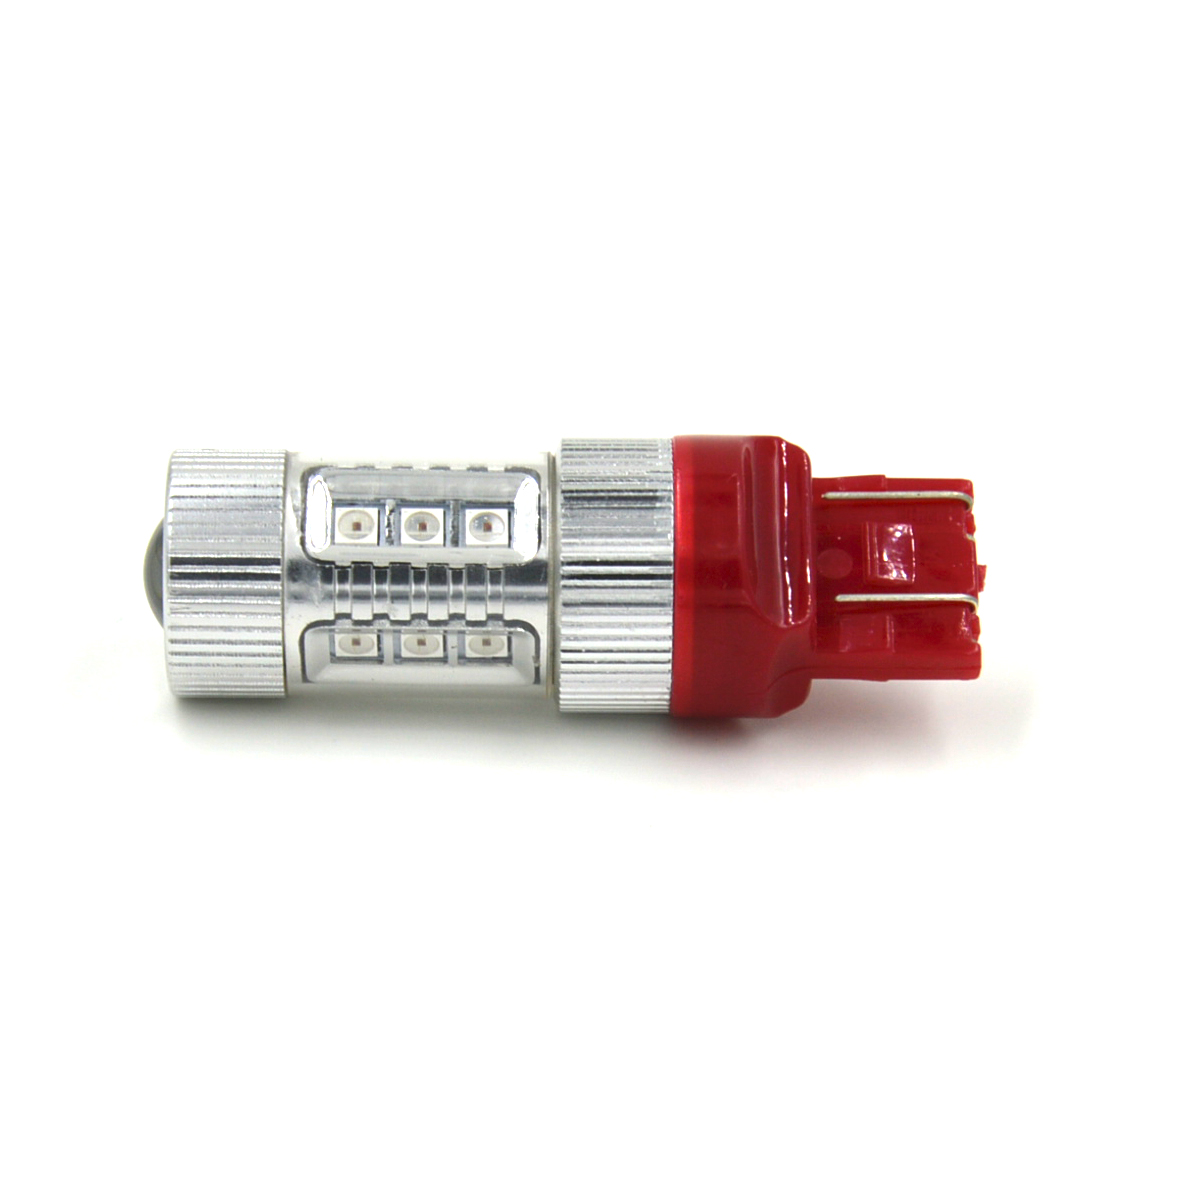 T20 /7443 DC 12-24V 80W 680LM Red LED Car Steering /Backup /Brake Light Lamp Bulbs